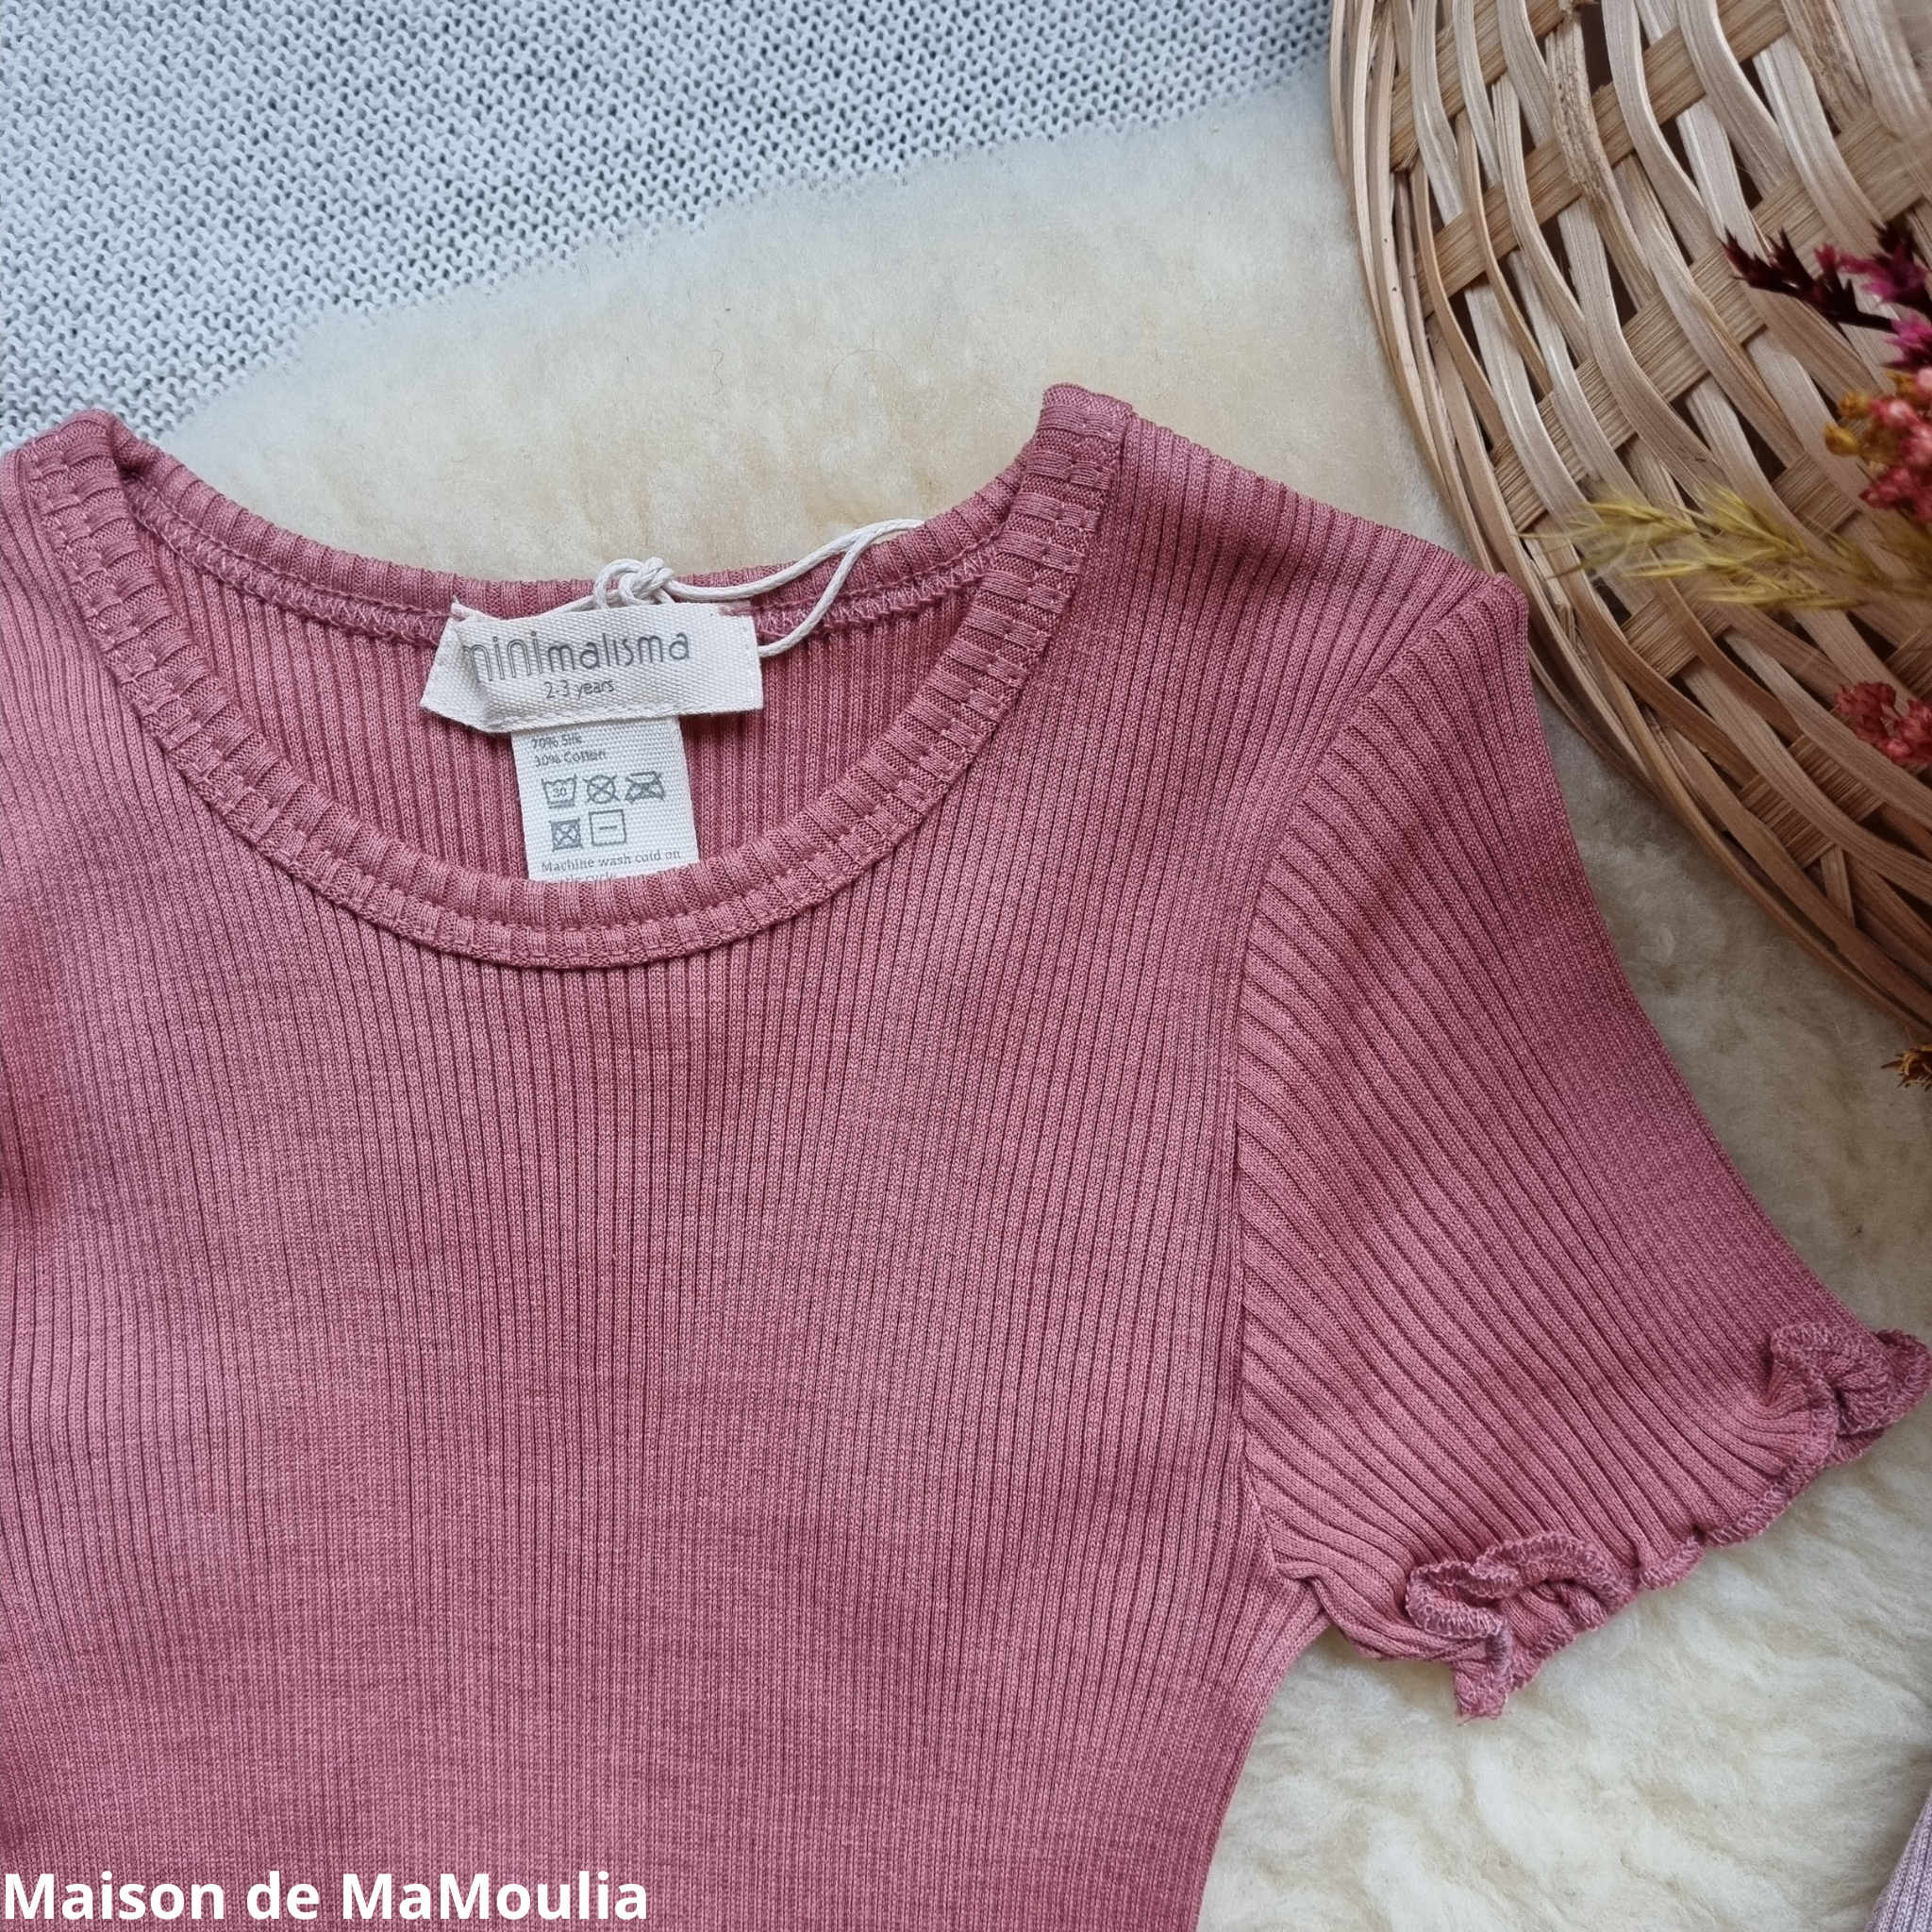 minimalisma-tshirt-enfant-fille-soie-coton-maison-de- mamoulia-waterfall-anthique-red-rose